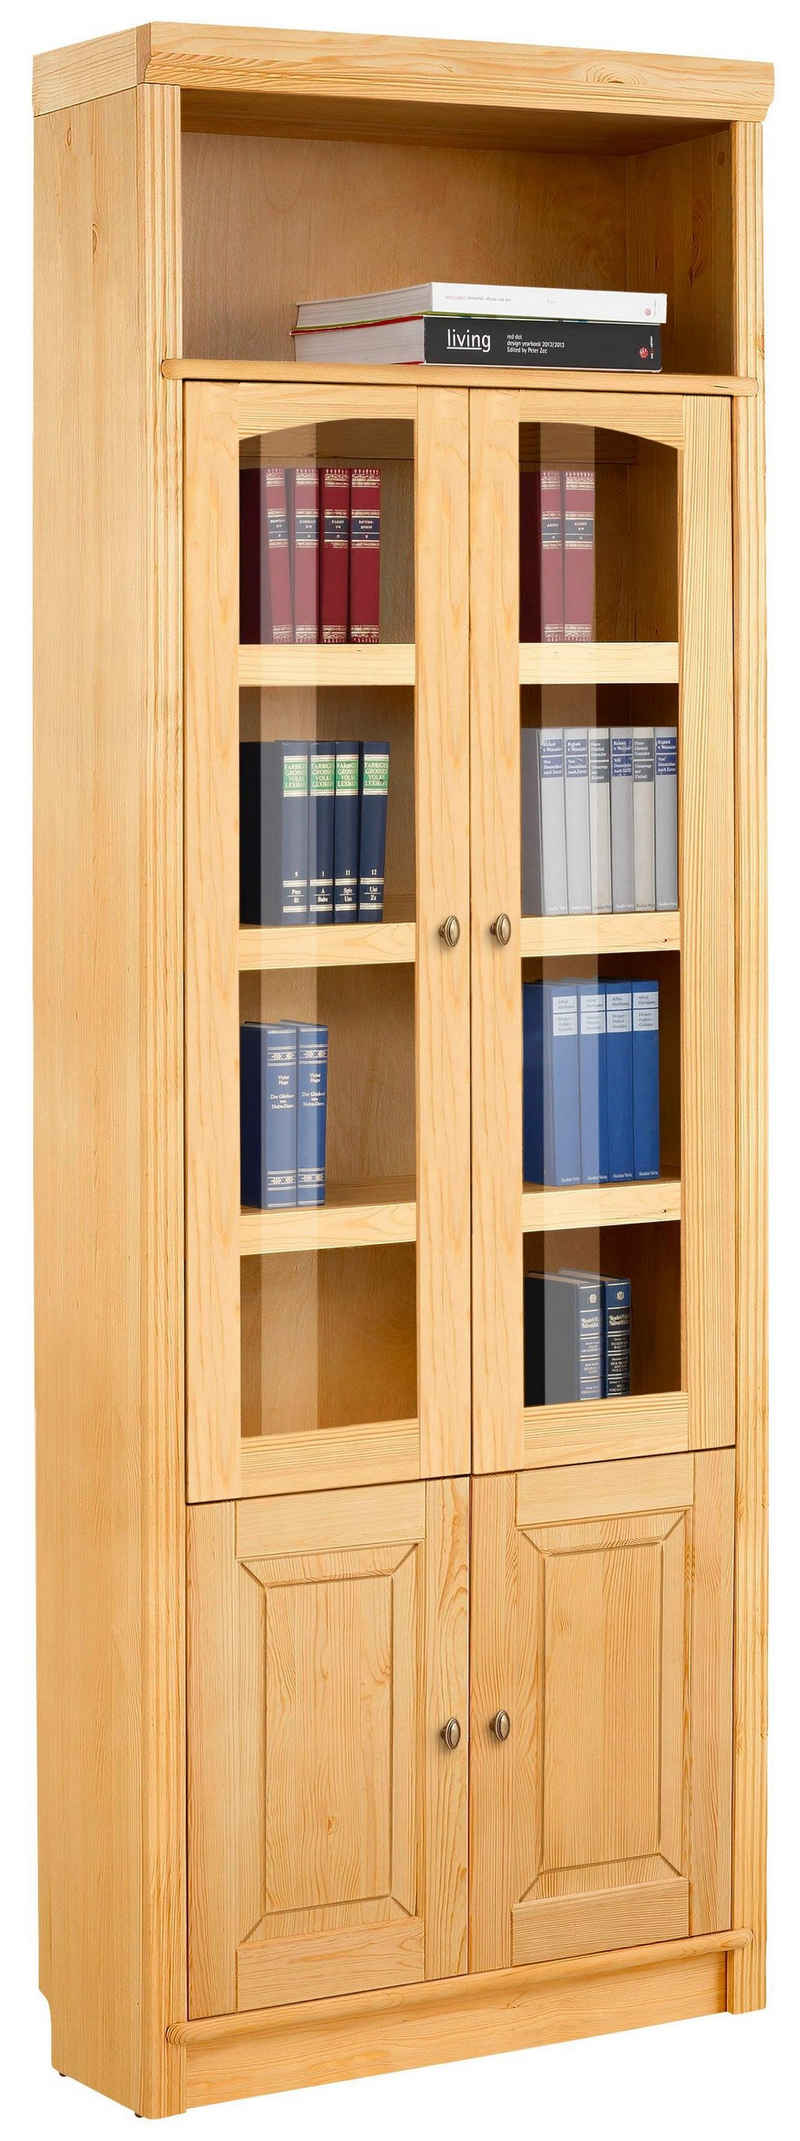 Home affaire Bücherregal »Soeren«, aus massiver Kiefer, in 2 Höhen, Tiefe 29 cm, Türen mit Klarglas Einsatz